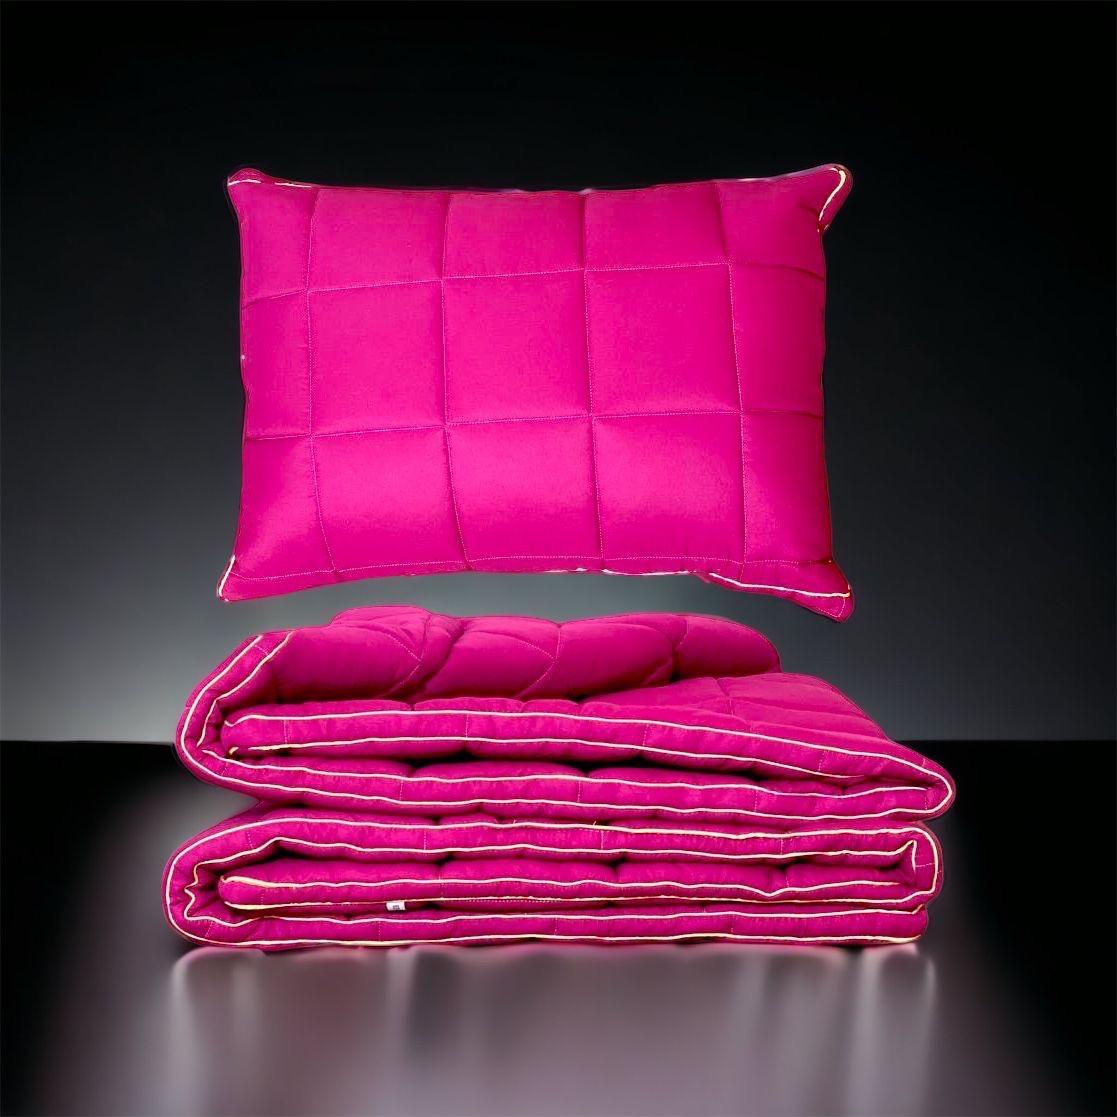 SANTE Set jastuk i pokrivač Premium 3 ciklama